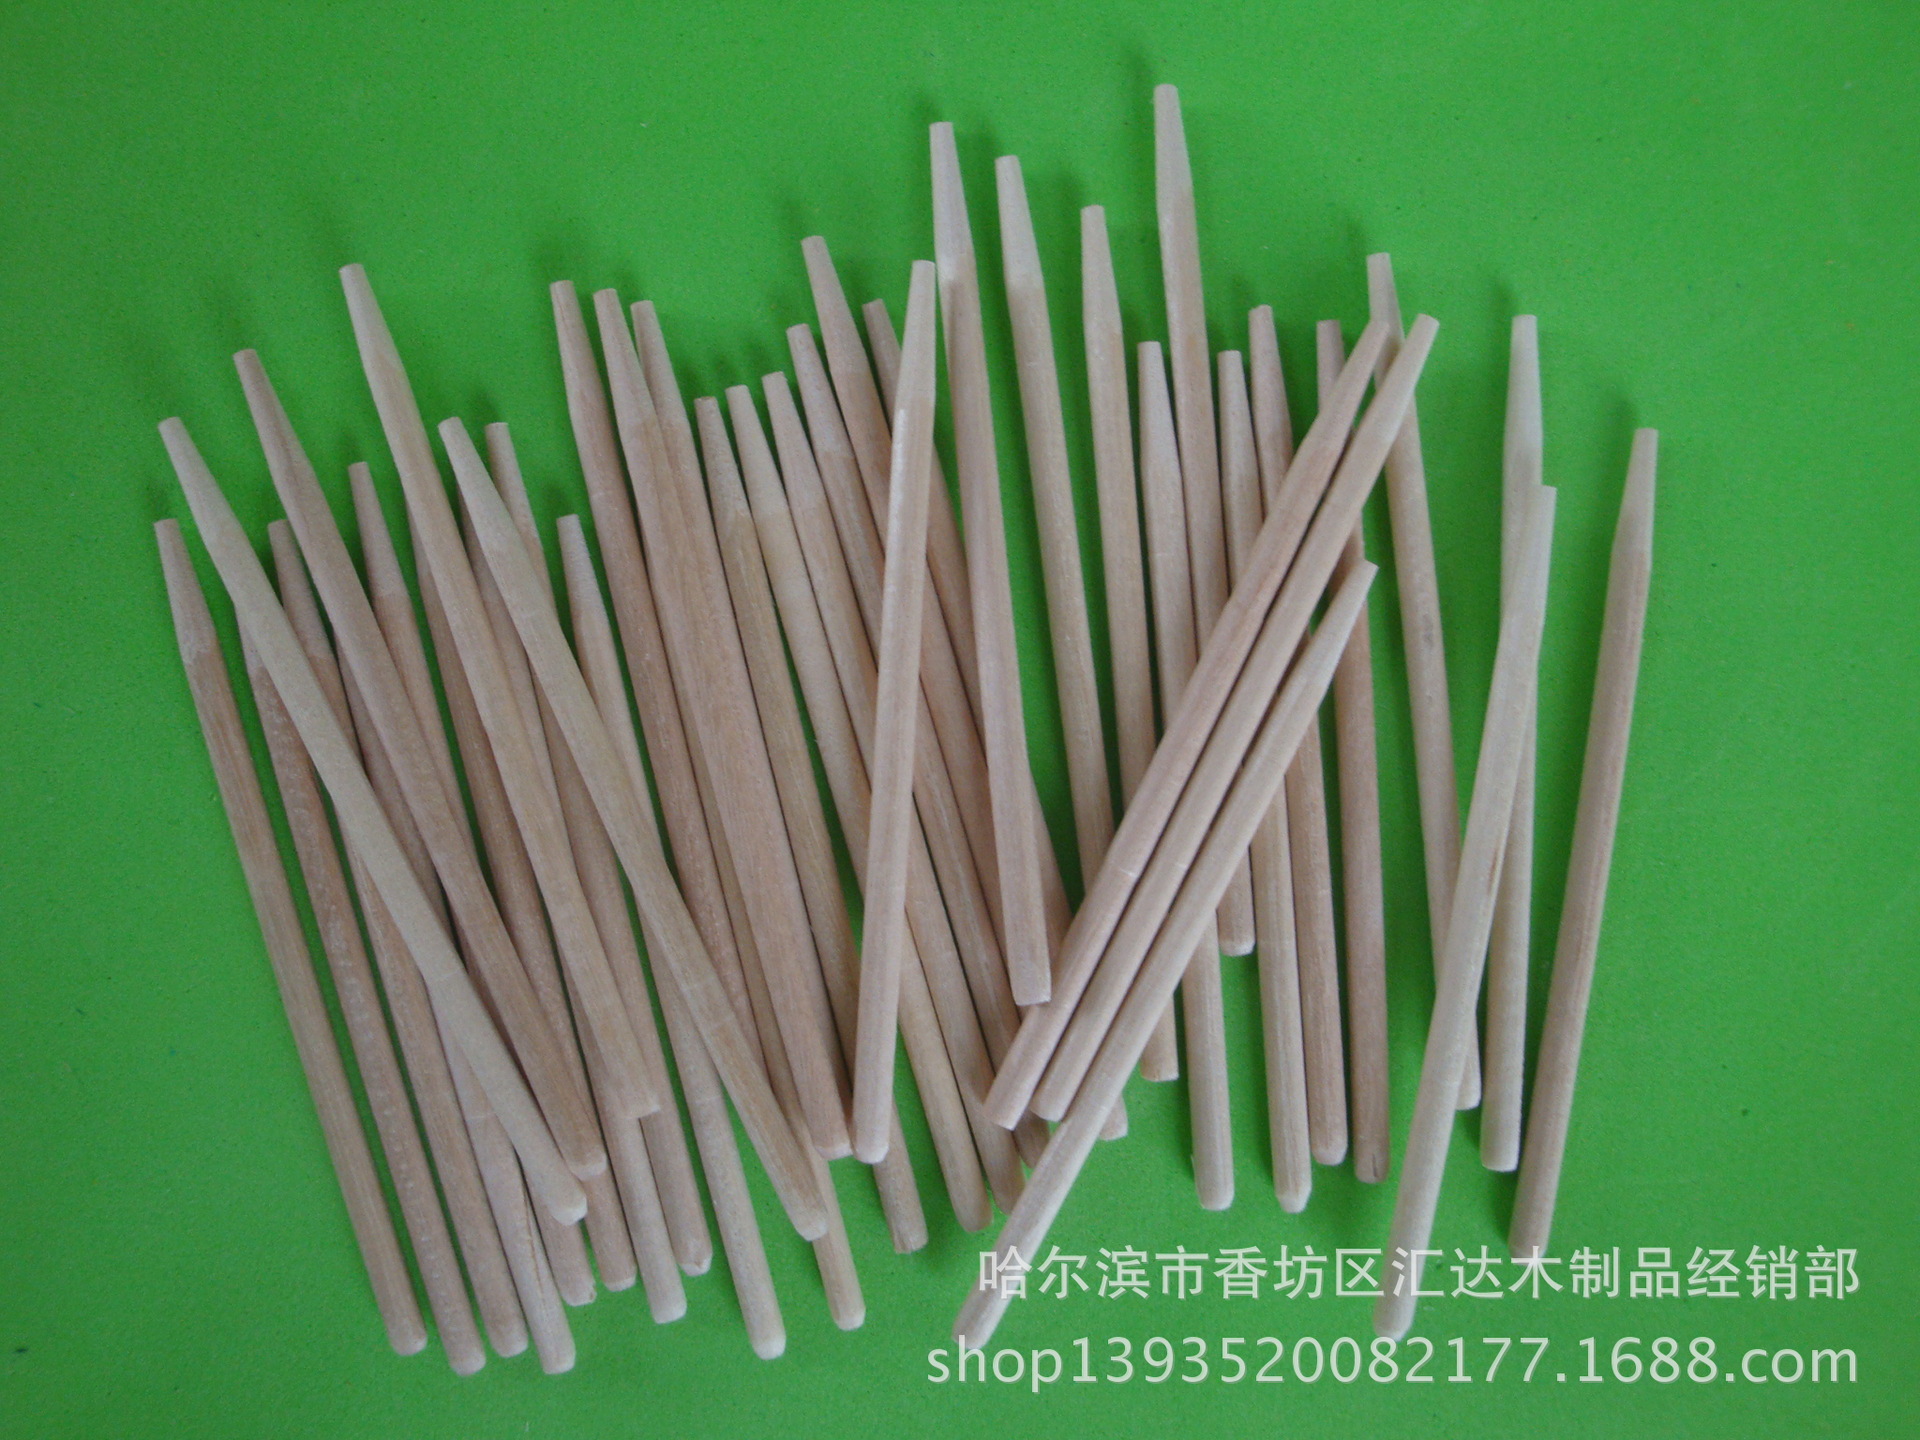 厂家供应糖棒 圆木糖棒 环保磨尖糖棒 一次性木质糖棒示例图4